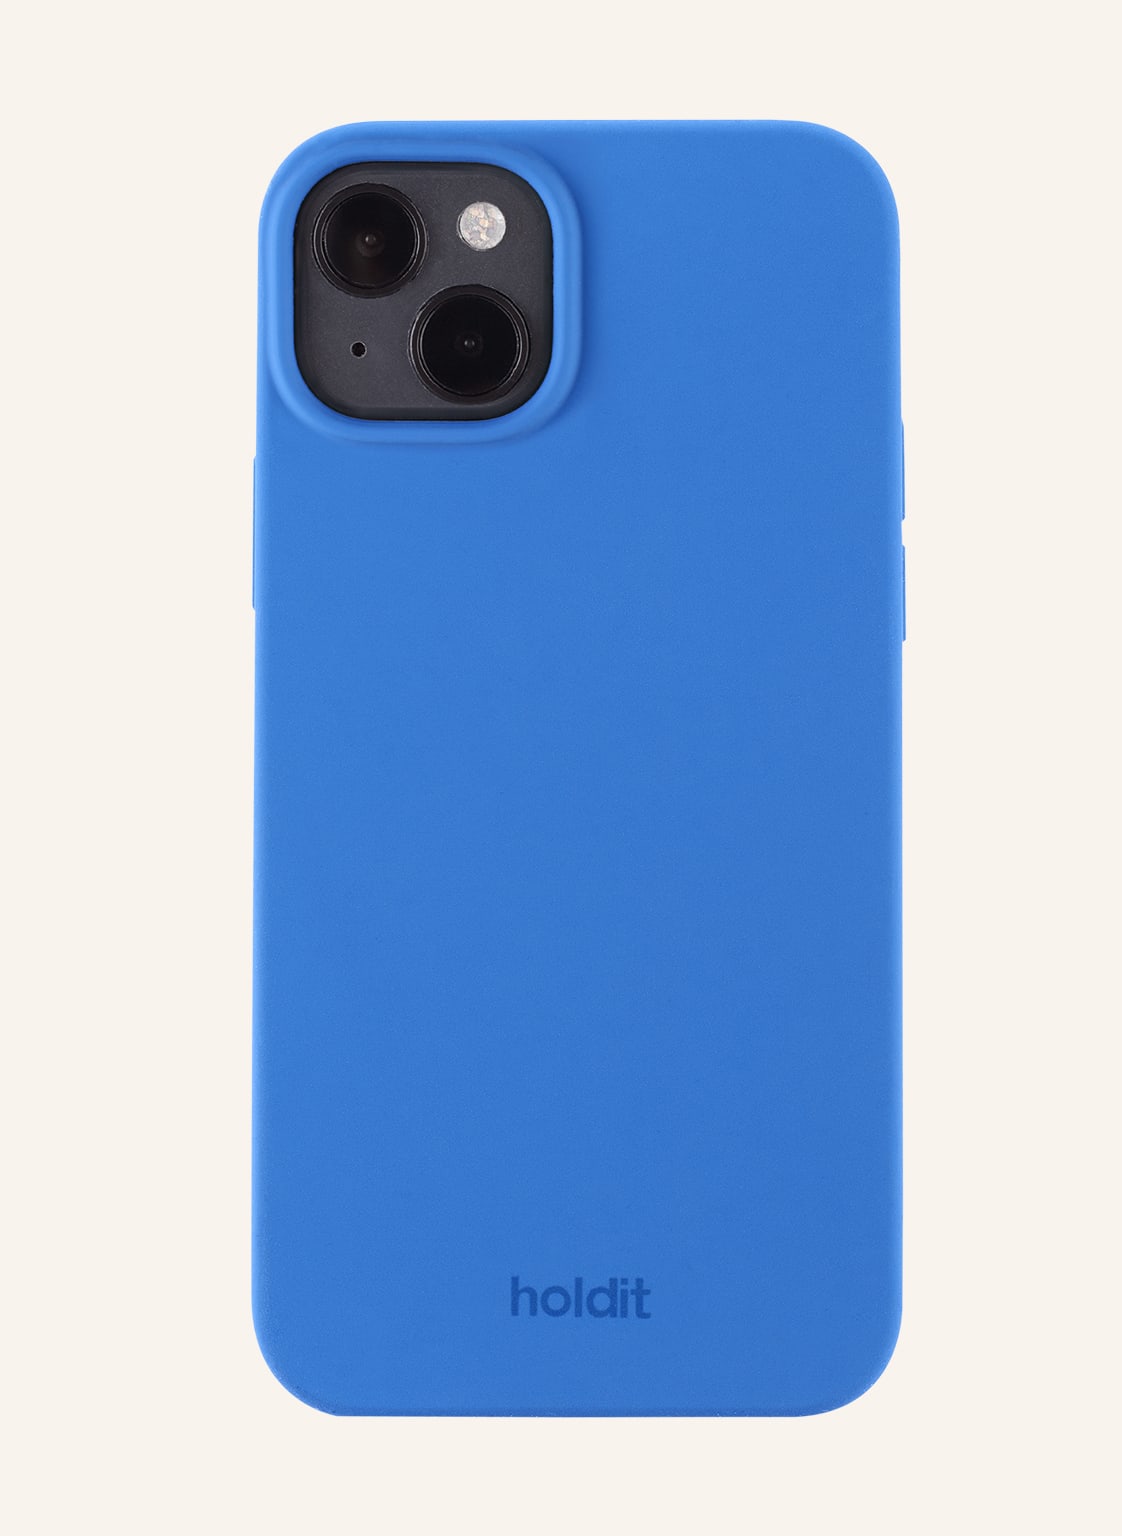 Holdit Smartphone-Hülle blau von holdit